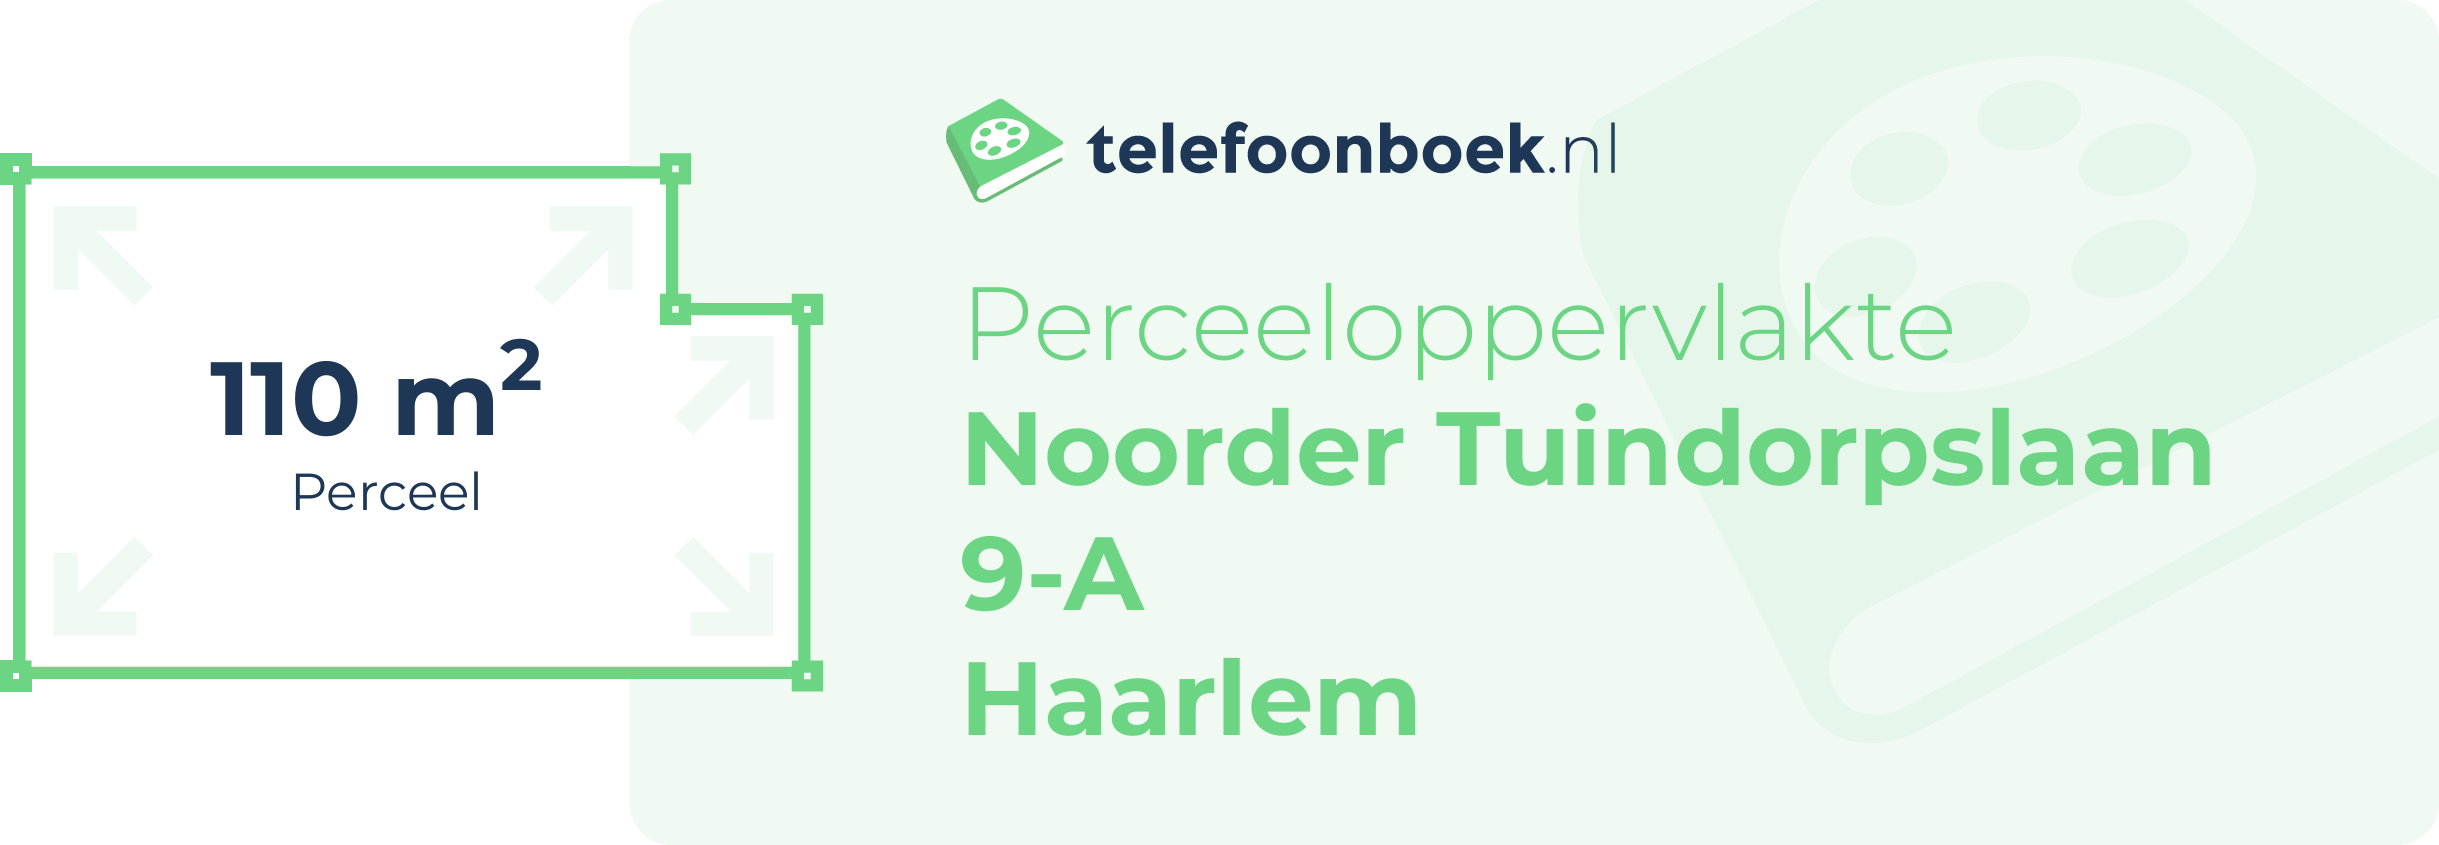 Perceeloppervlakte Noorder Tuindorpslaan 9-A Haarlem